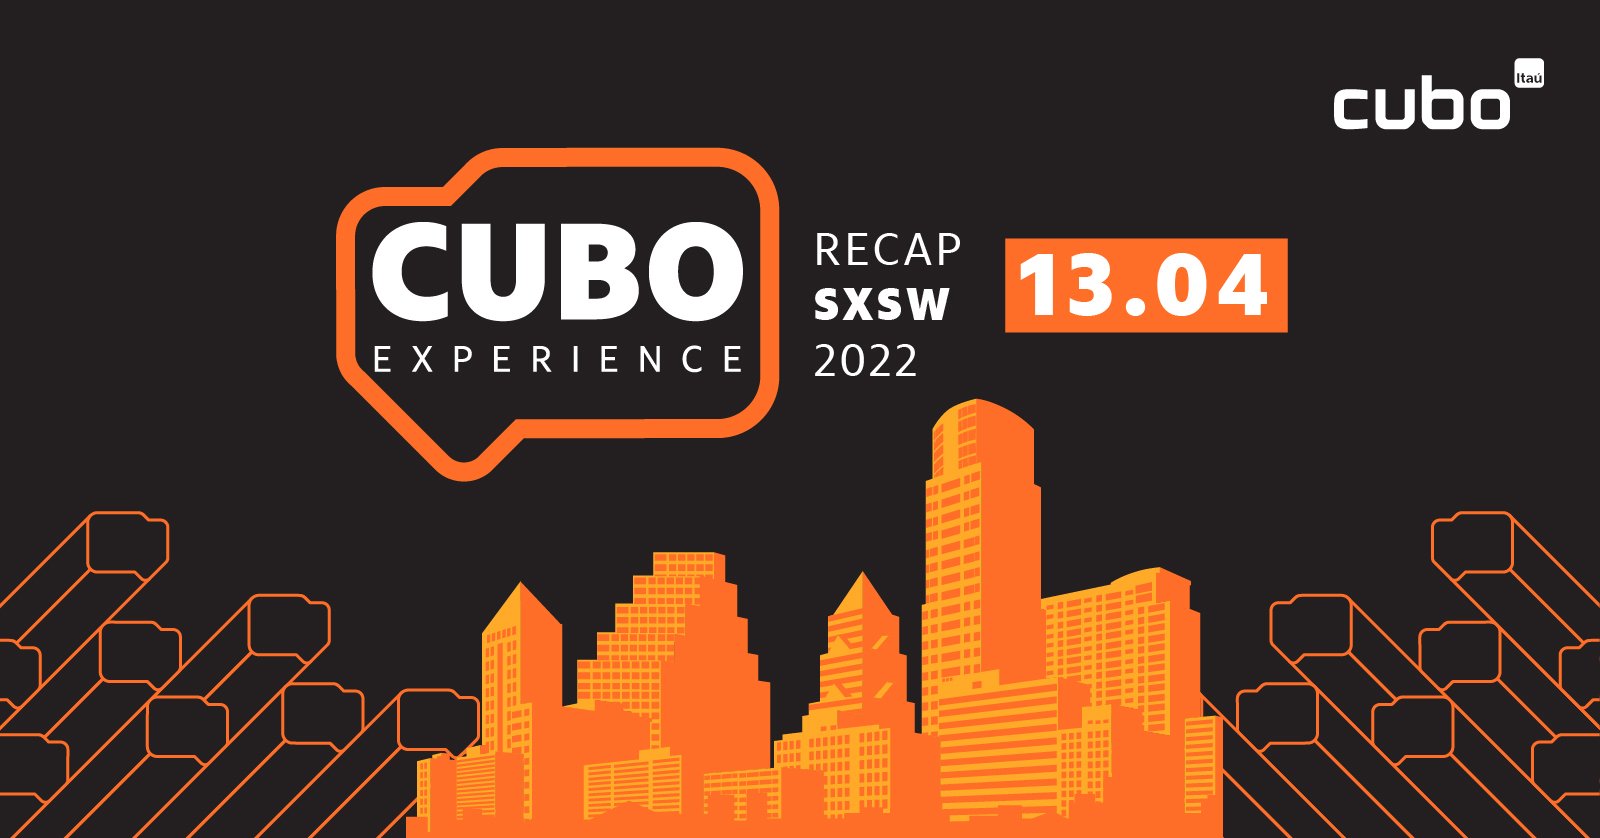 Cubo Experience Recap SXSW 22
